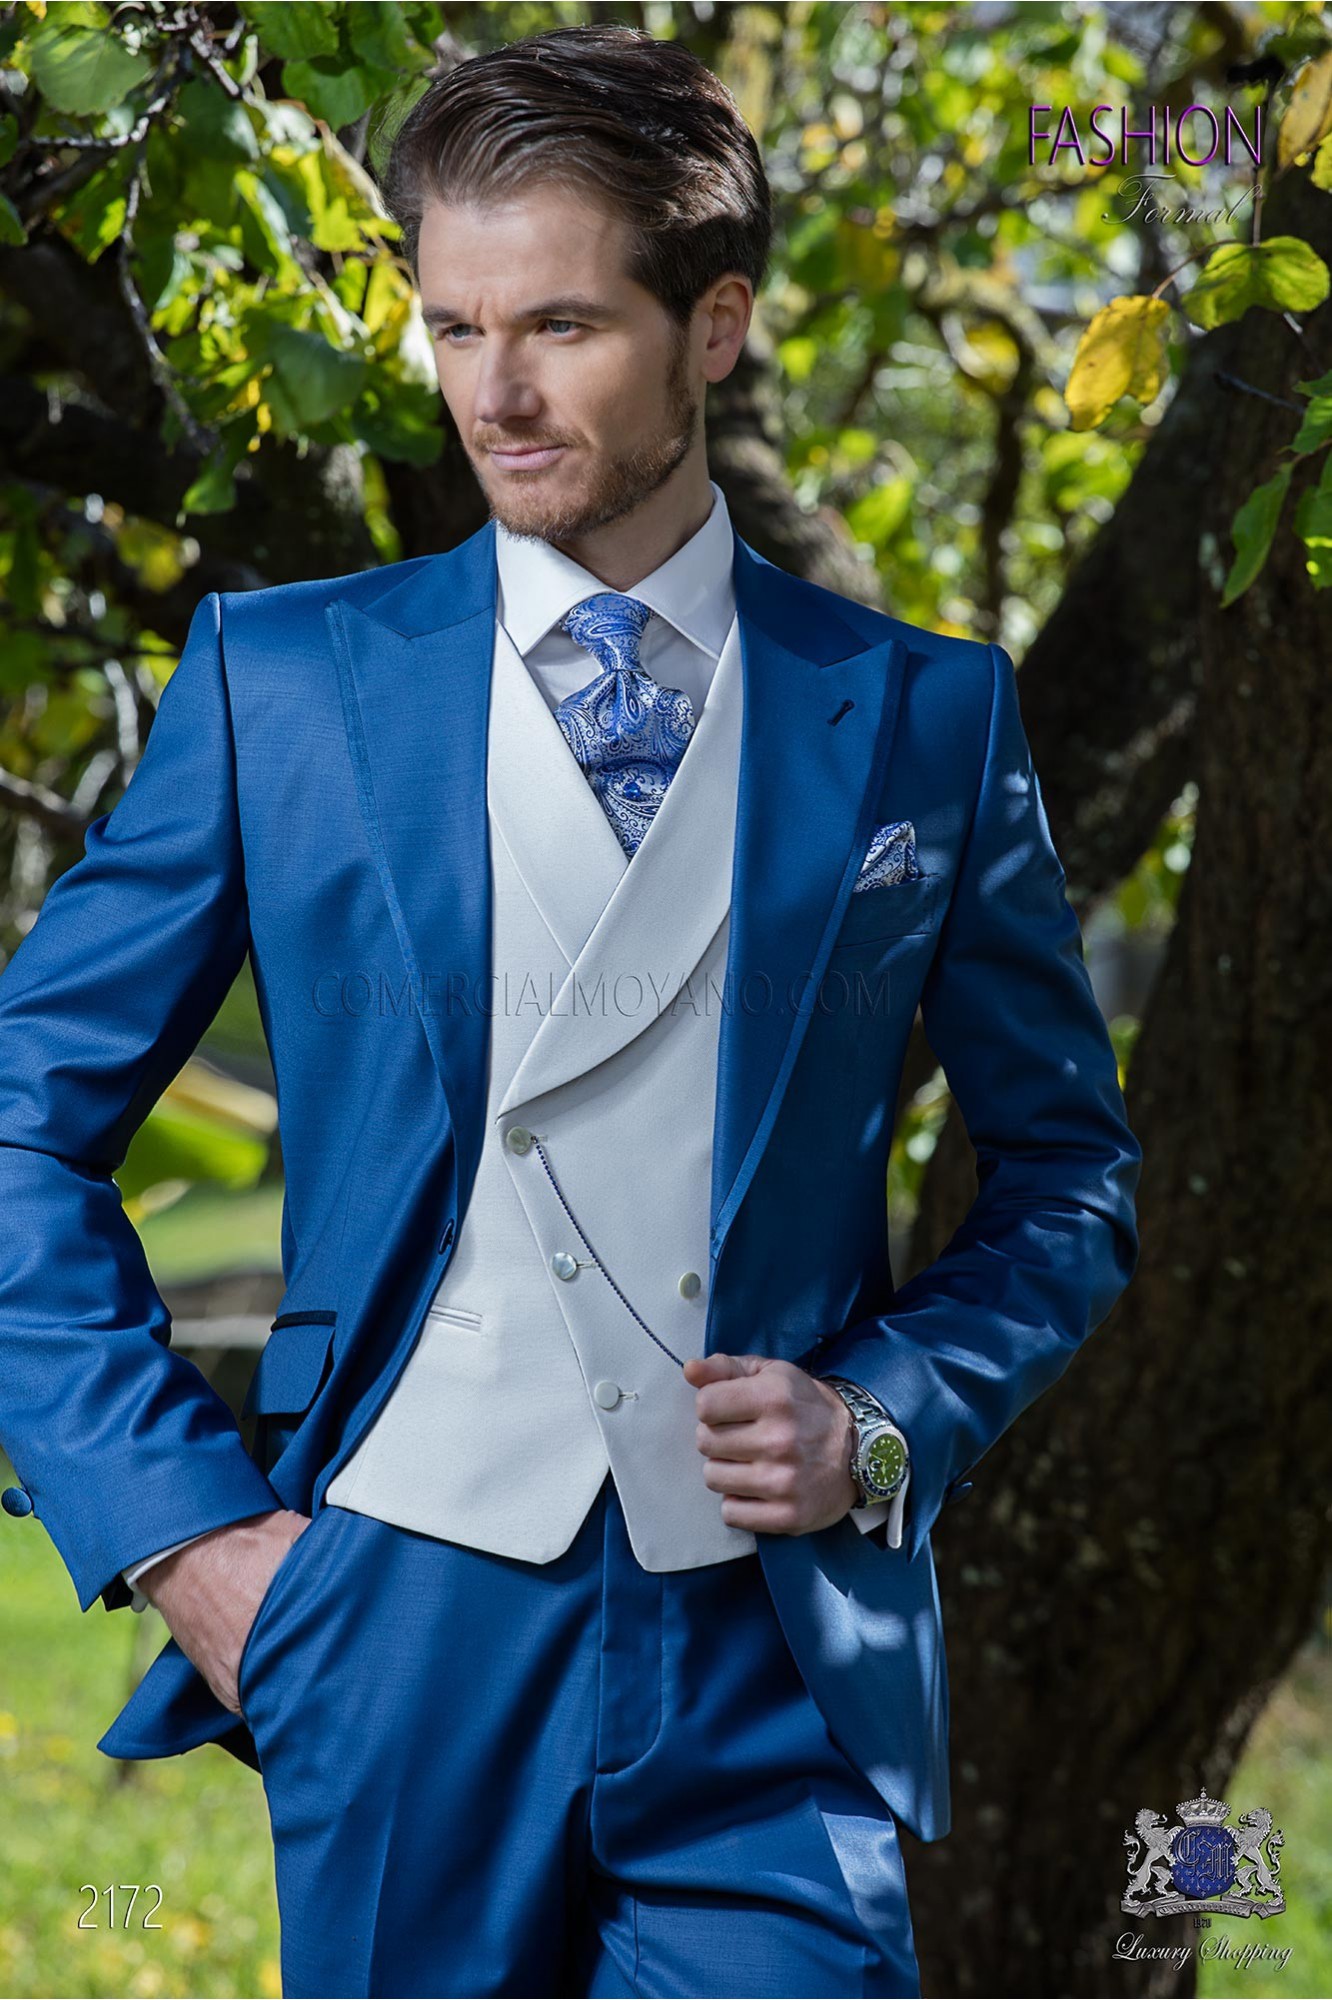 Traje de novio azul royal tejido fresco lana modelo: 2172 Mario Moyano colección Fashion